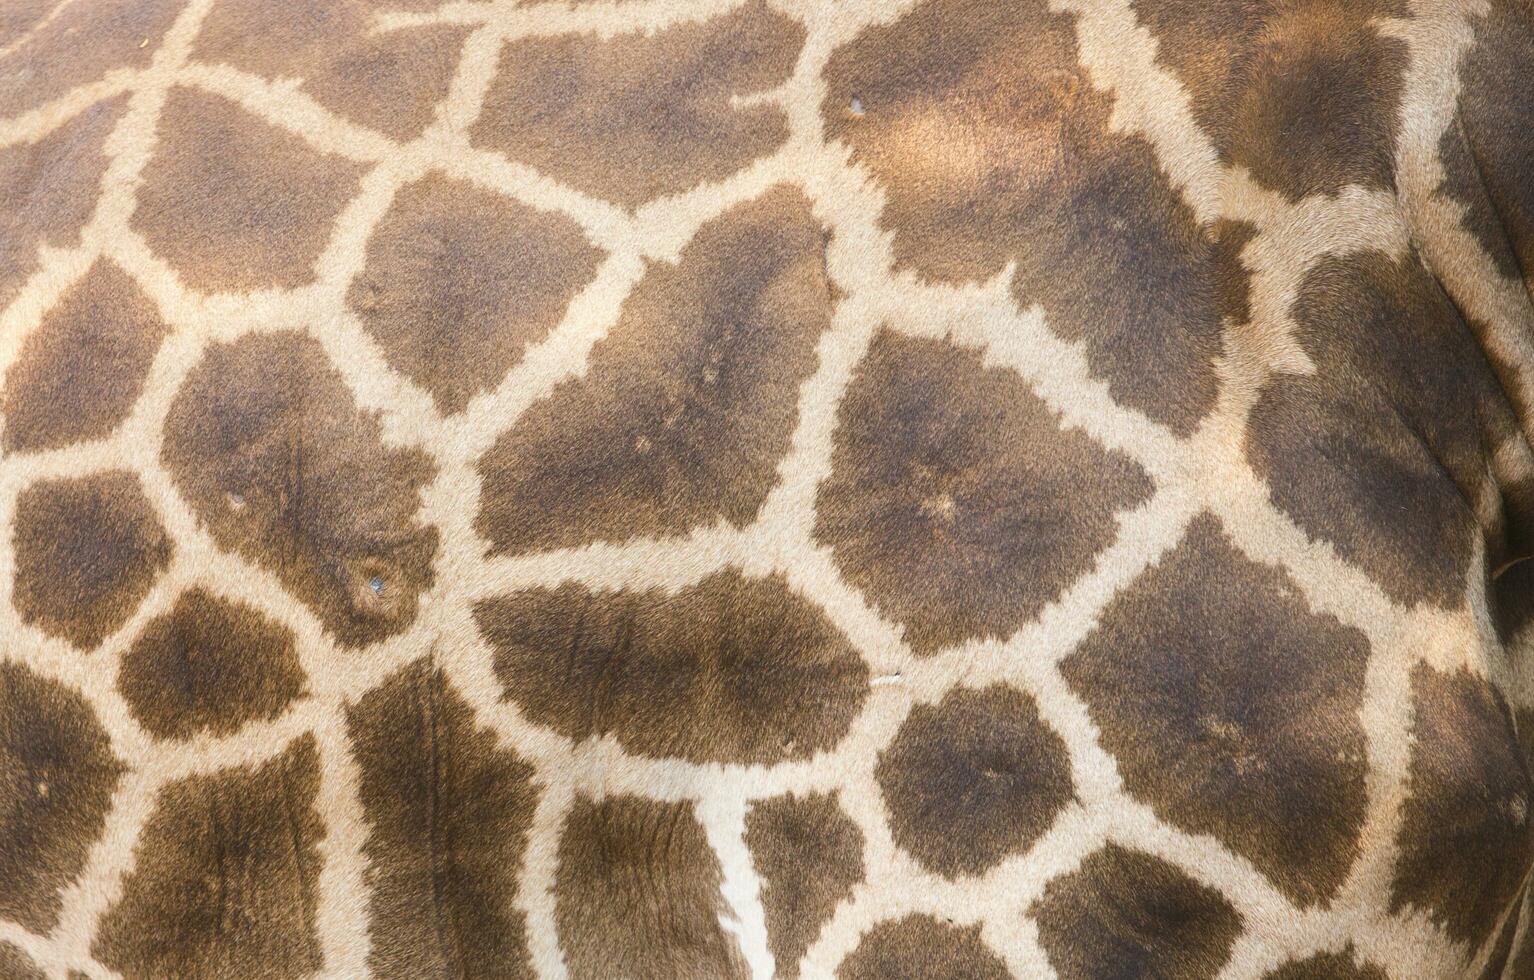 äkta läder hud av giraff foto